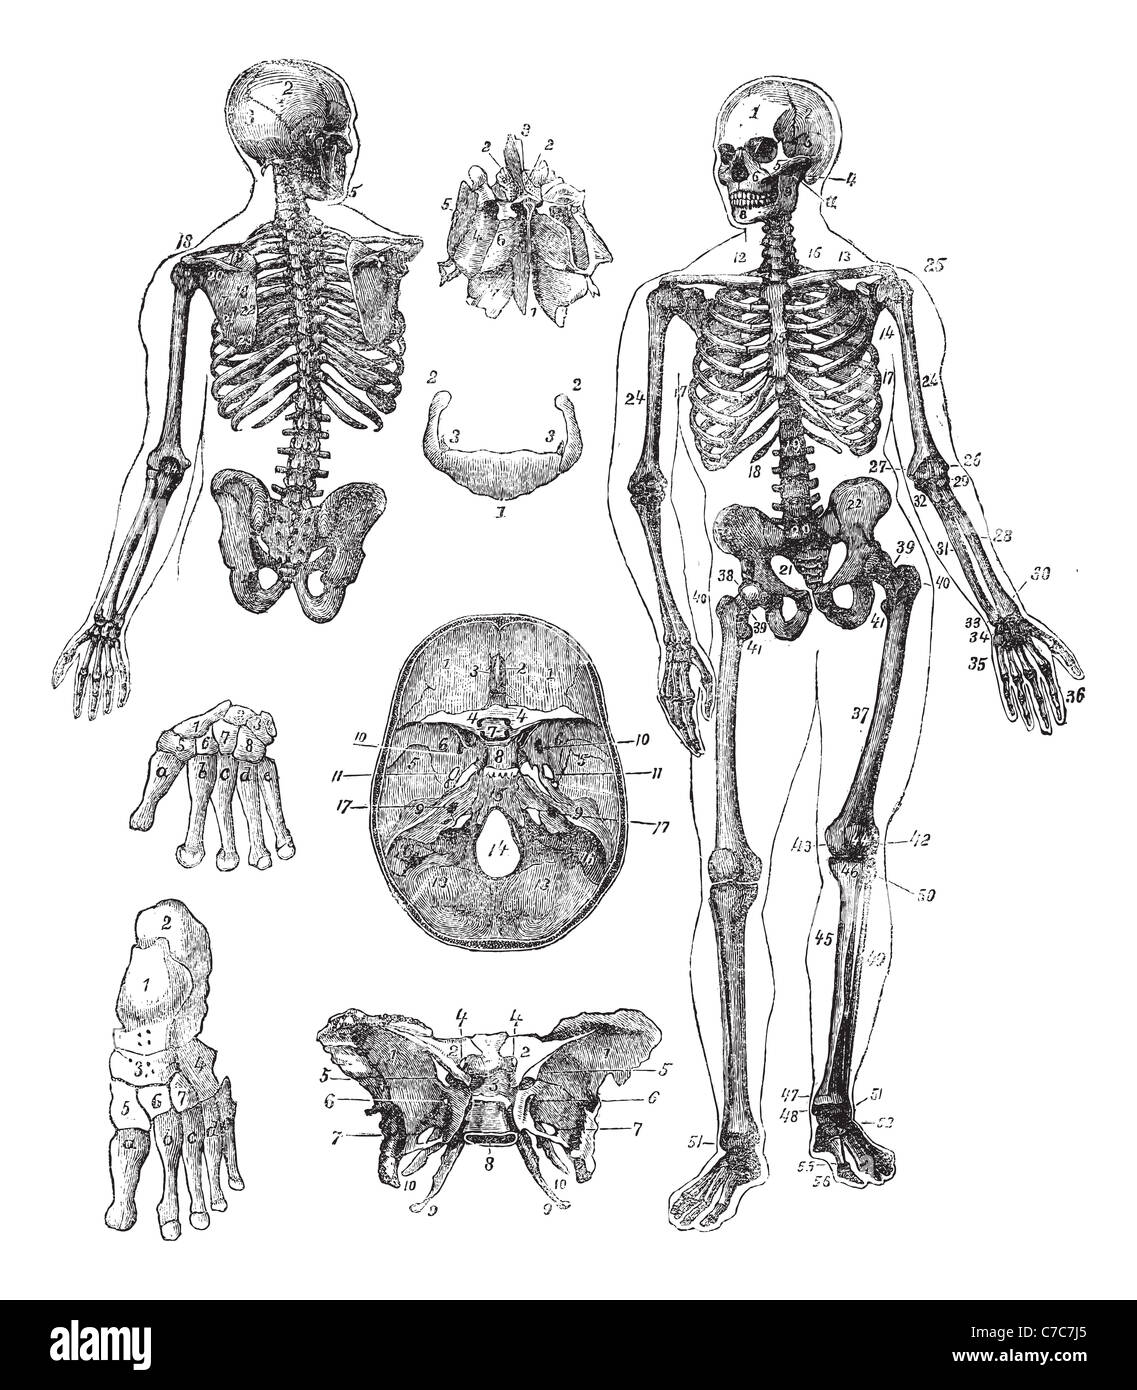 Squelette humain, gravure d'époque. Vieille illustration gravée de squelette humain à partir de l'avant et arrière. Banque D'Images